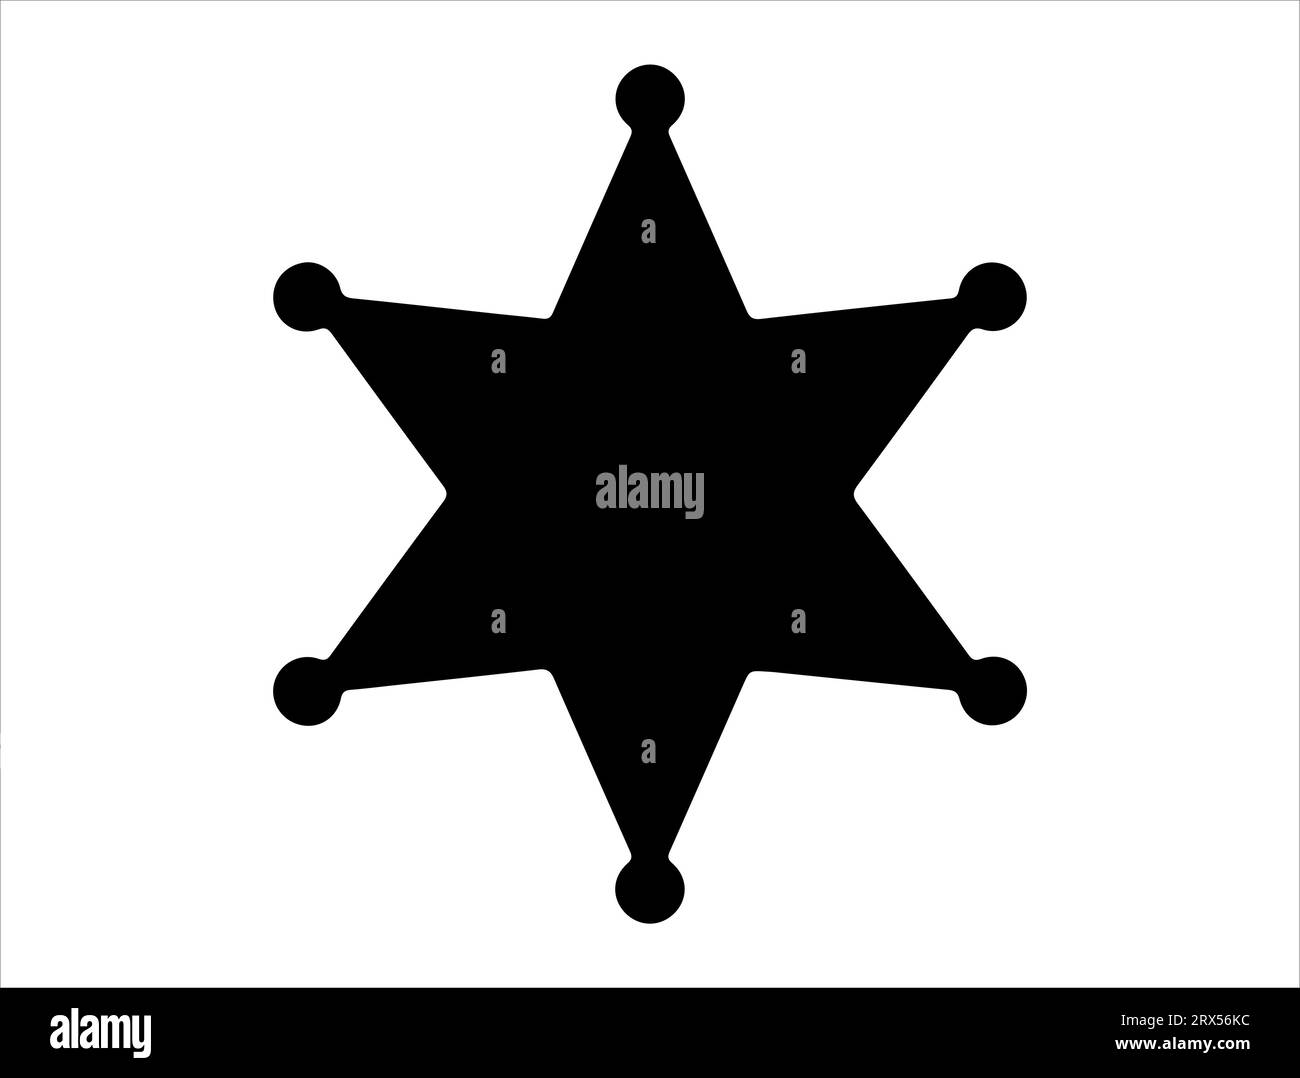 Sheriff star silhouette vector art white background Stock Vector